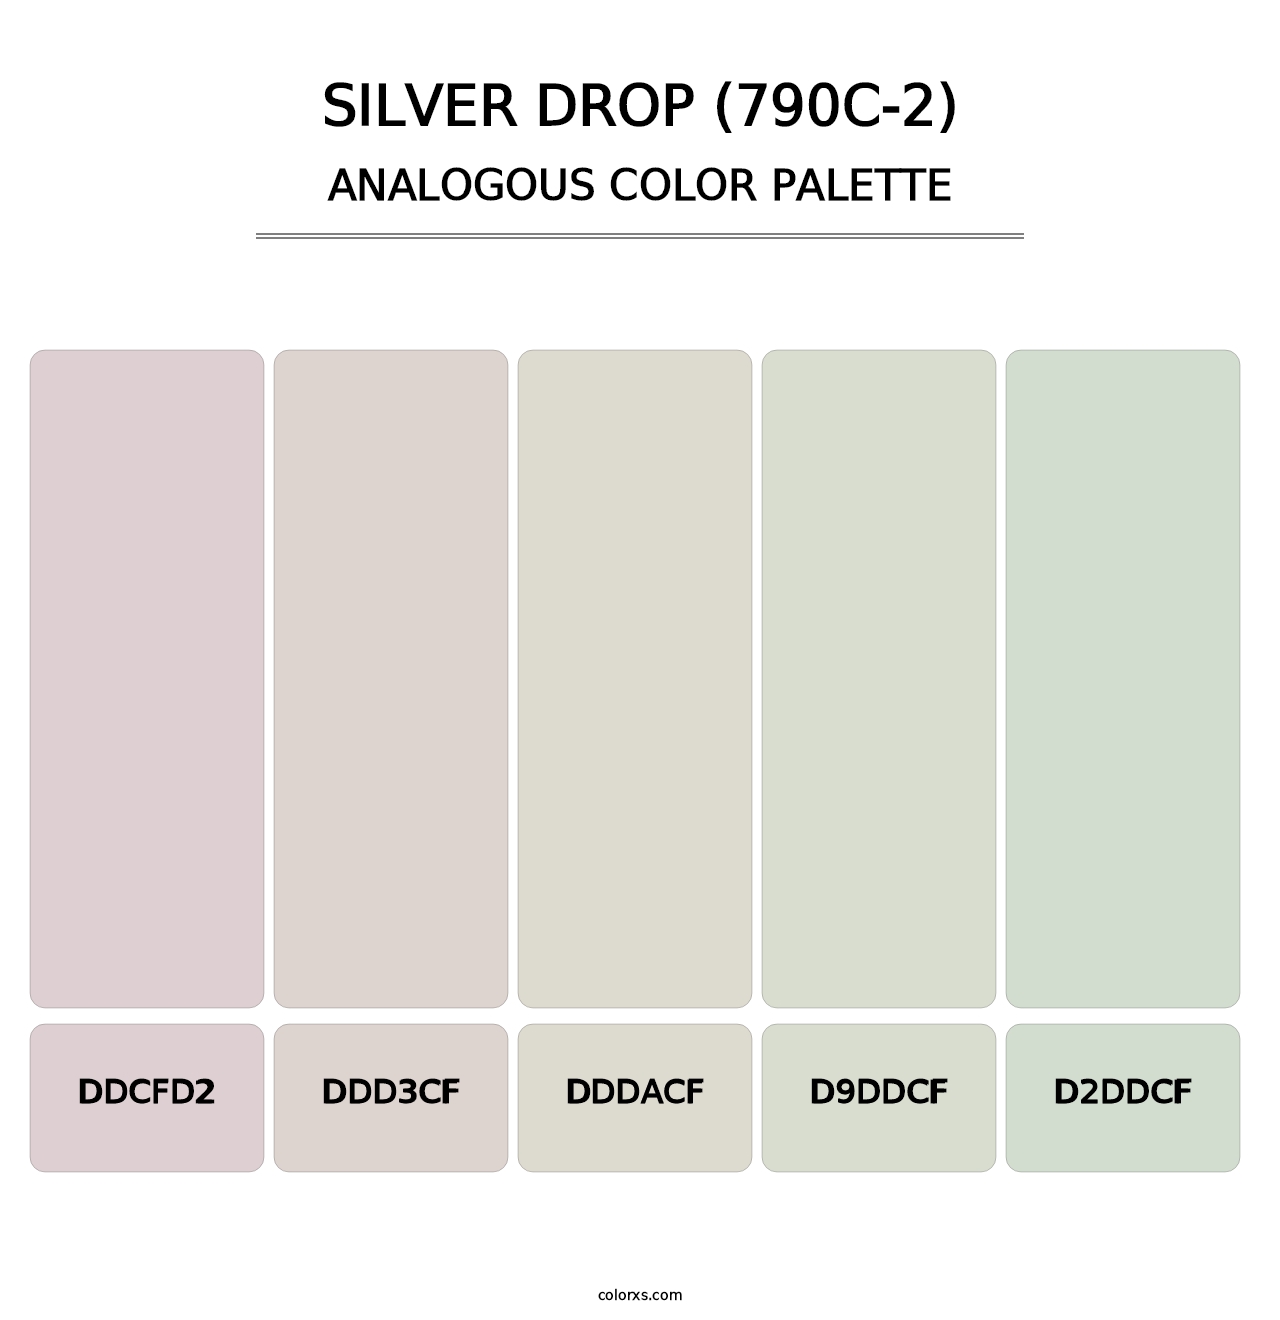 Silver Drop (790C-2) - Analogous Color Palette